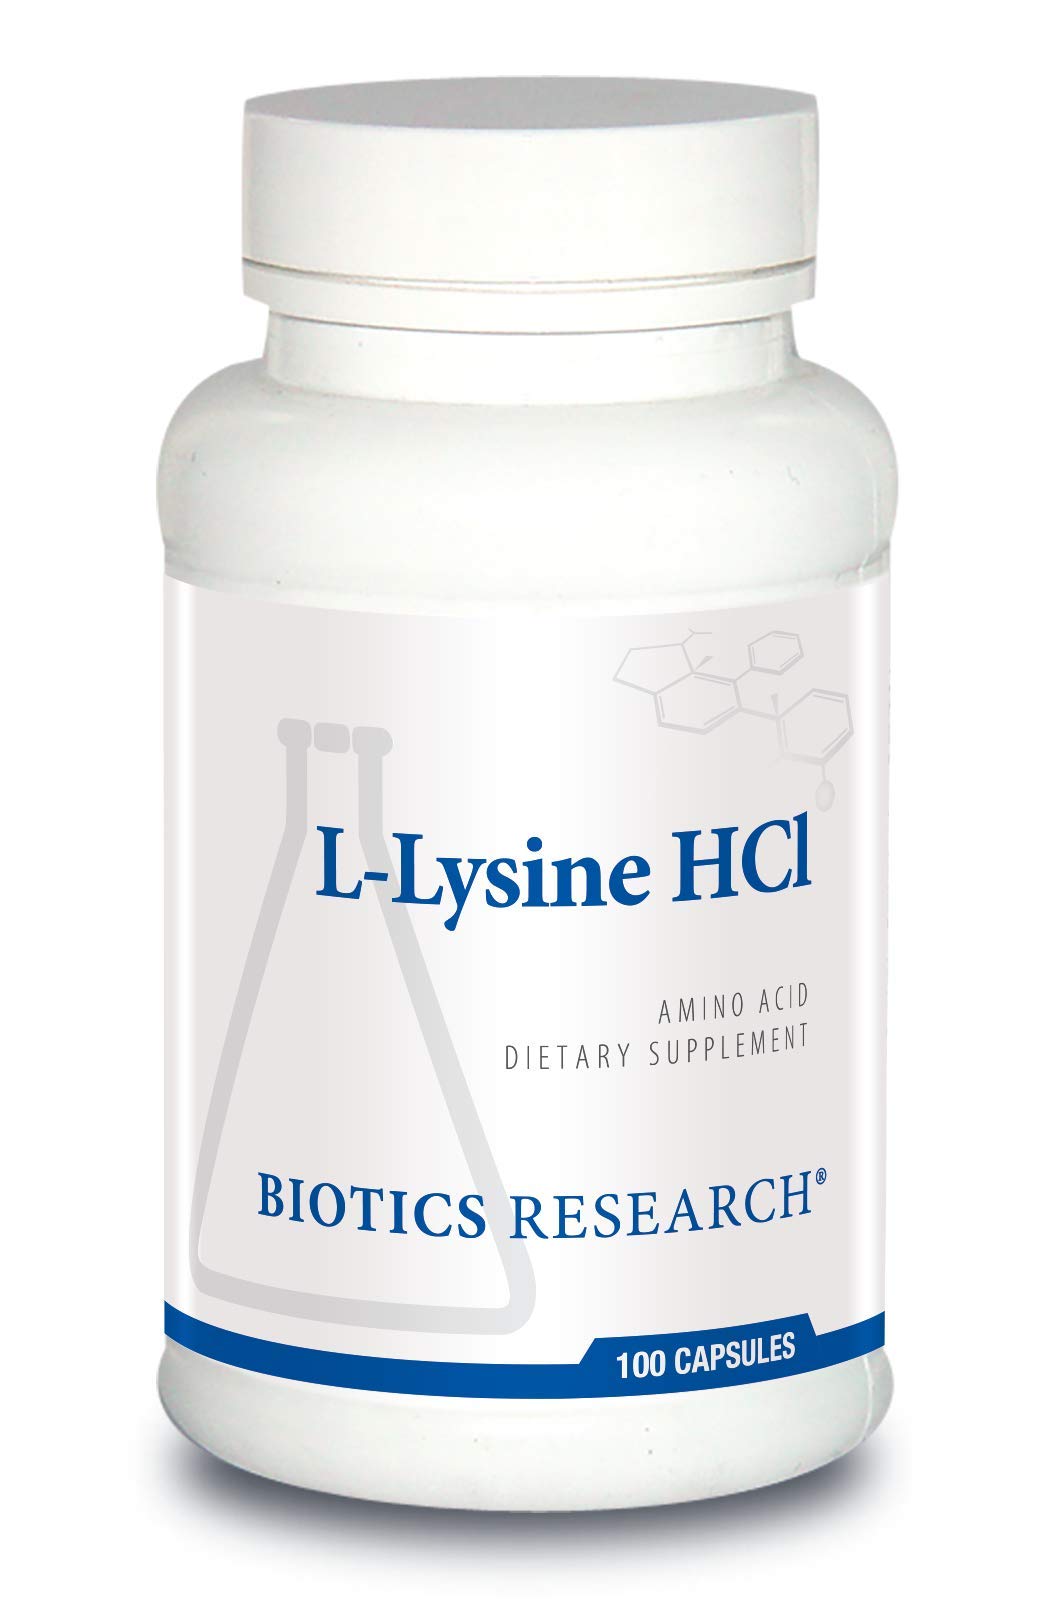 BIOTICS Research L Lysine HCI Amino Acid L lysine Supplement Promotes Energy, Boosts Immunity, Stimulates Calcium Absorption 100 Capsules